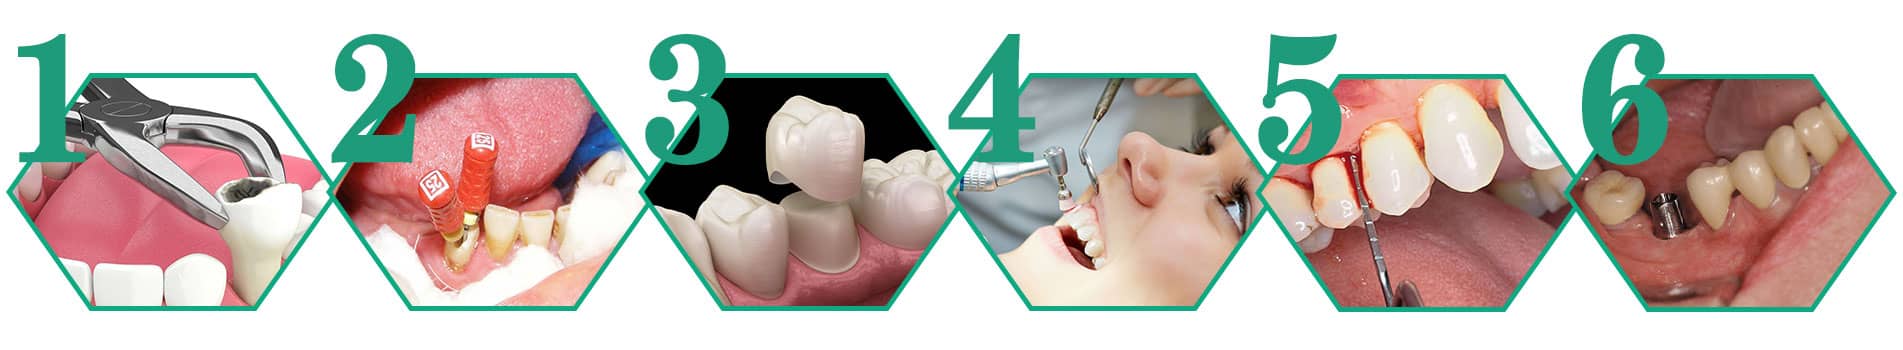 ترتیب طرح درمان دندانپزشکی